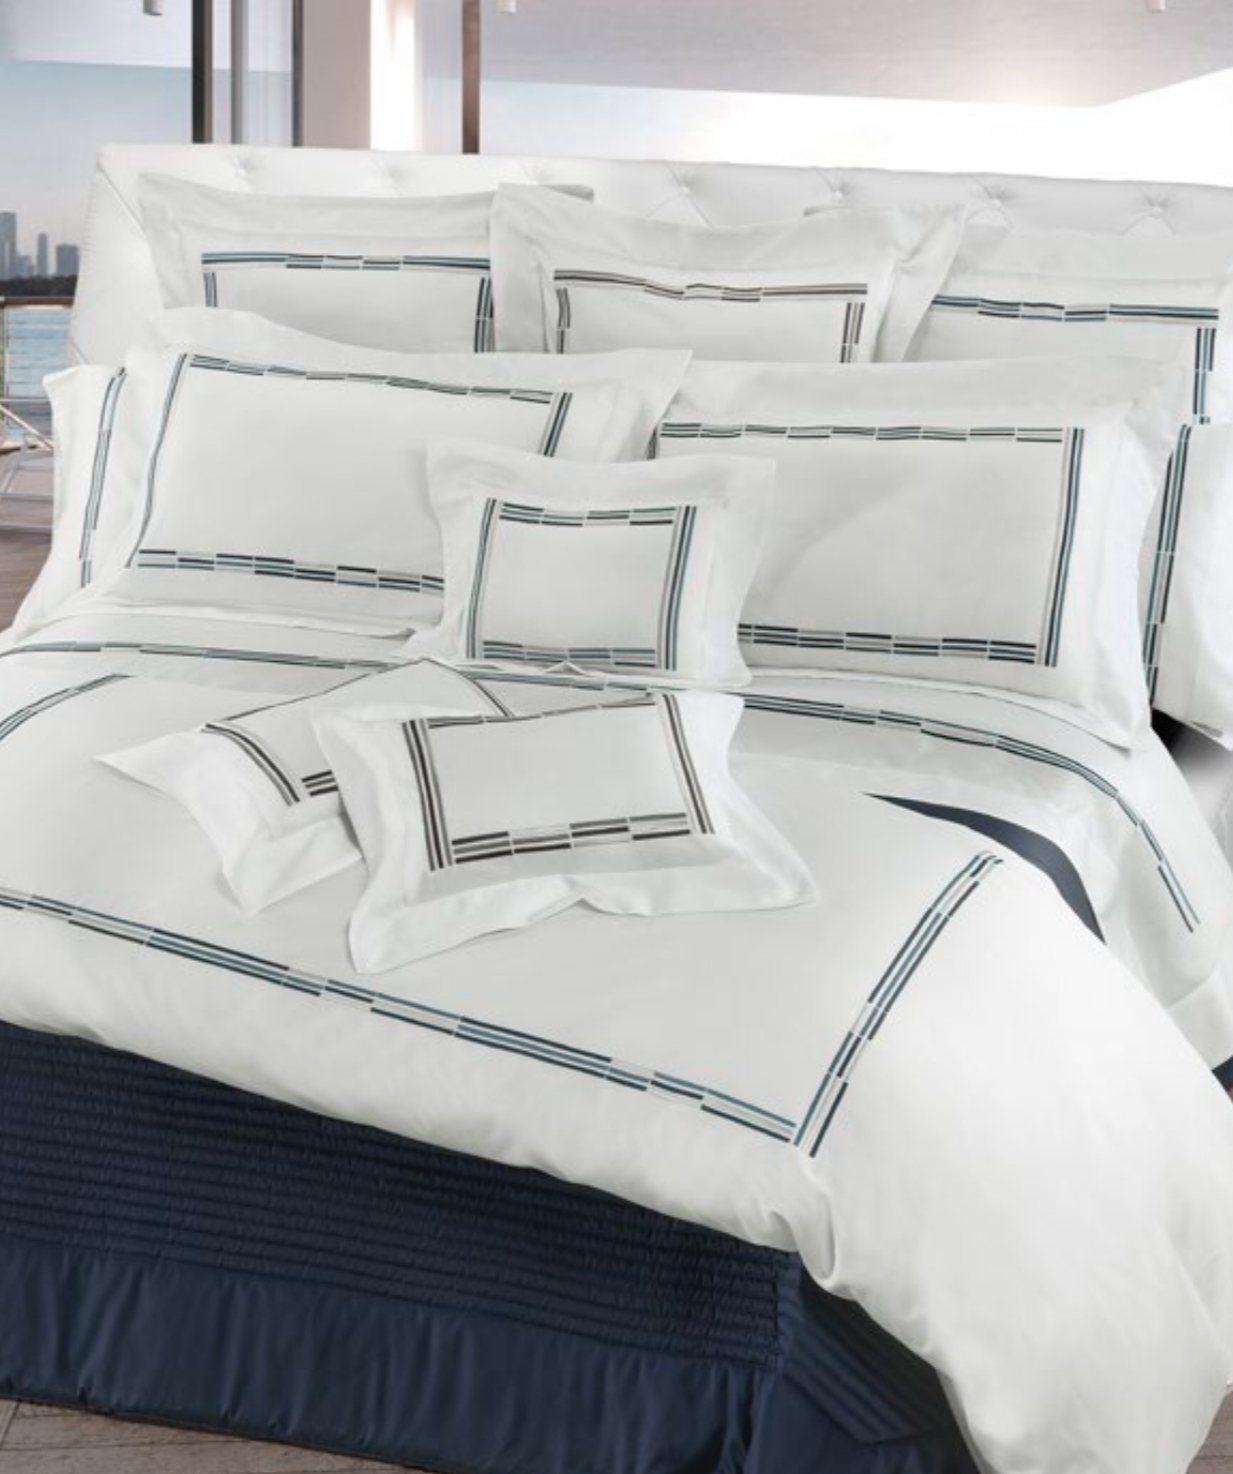 Bed linen supplies